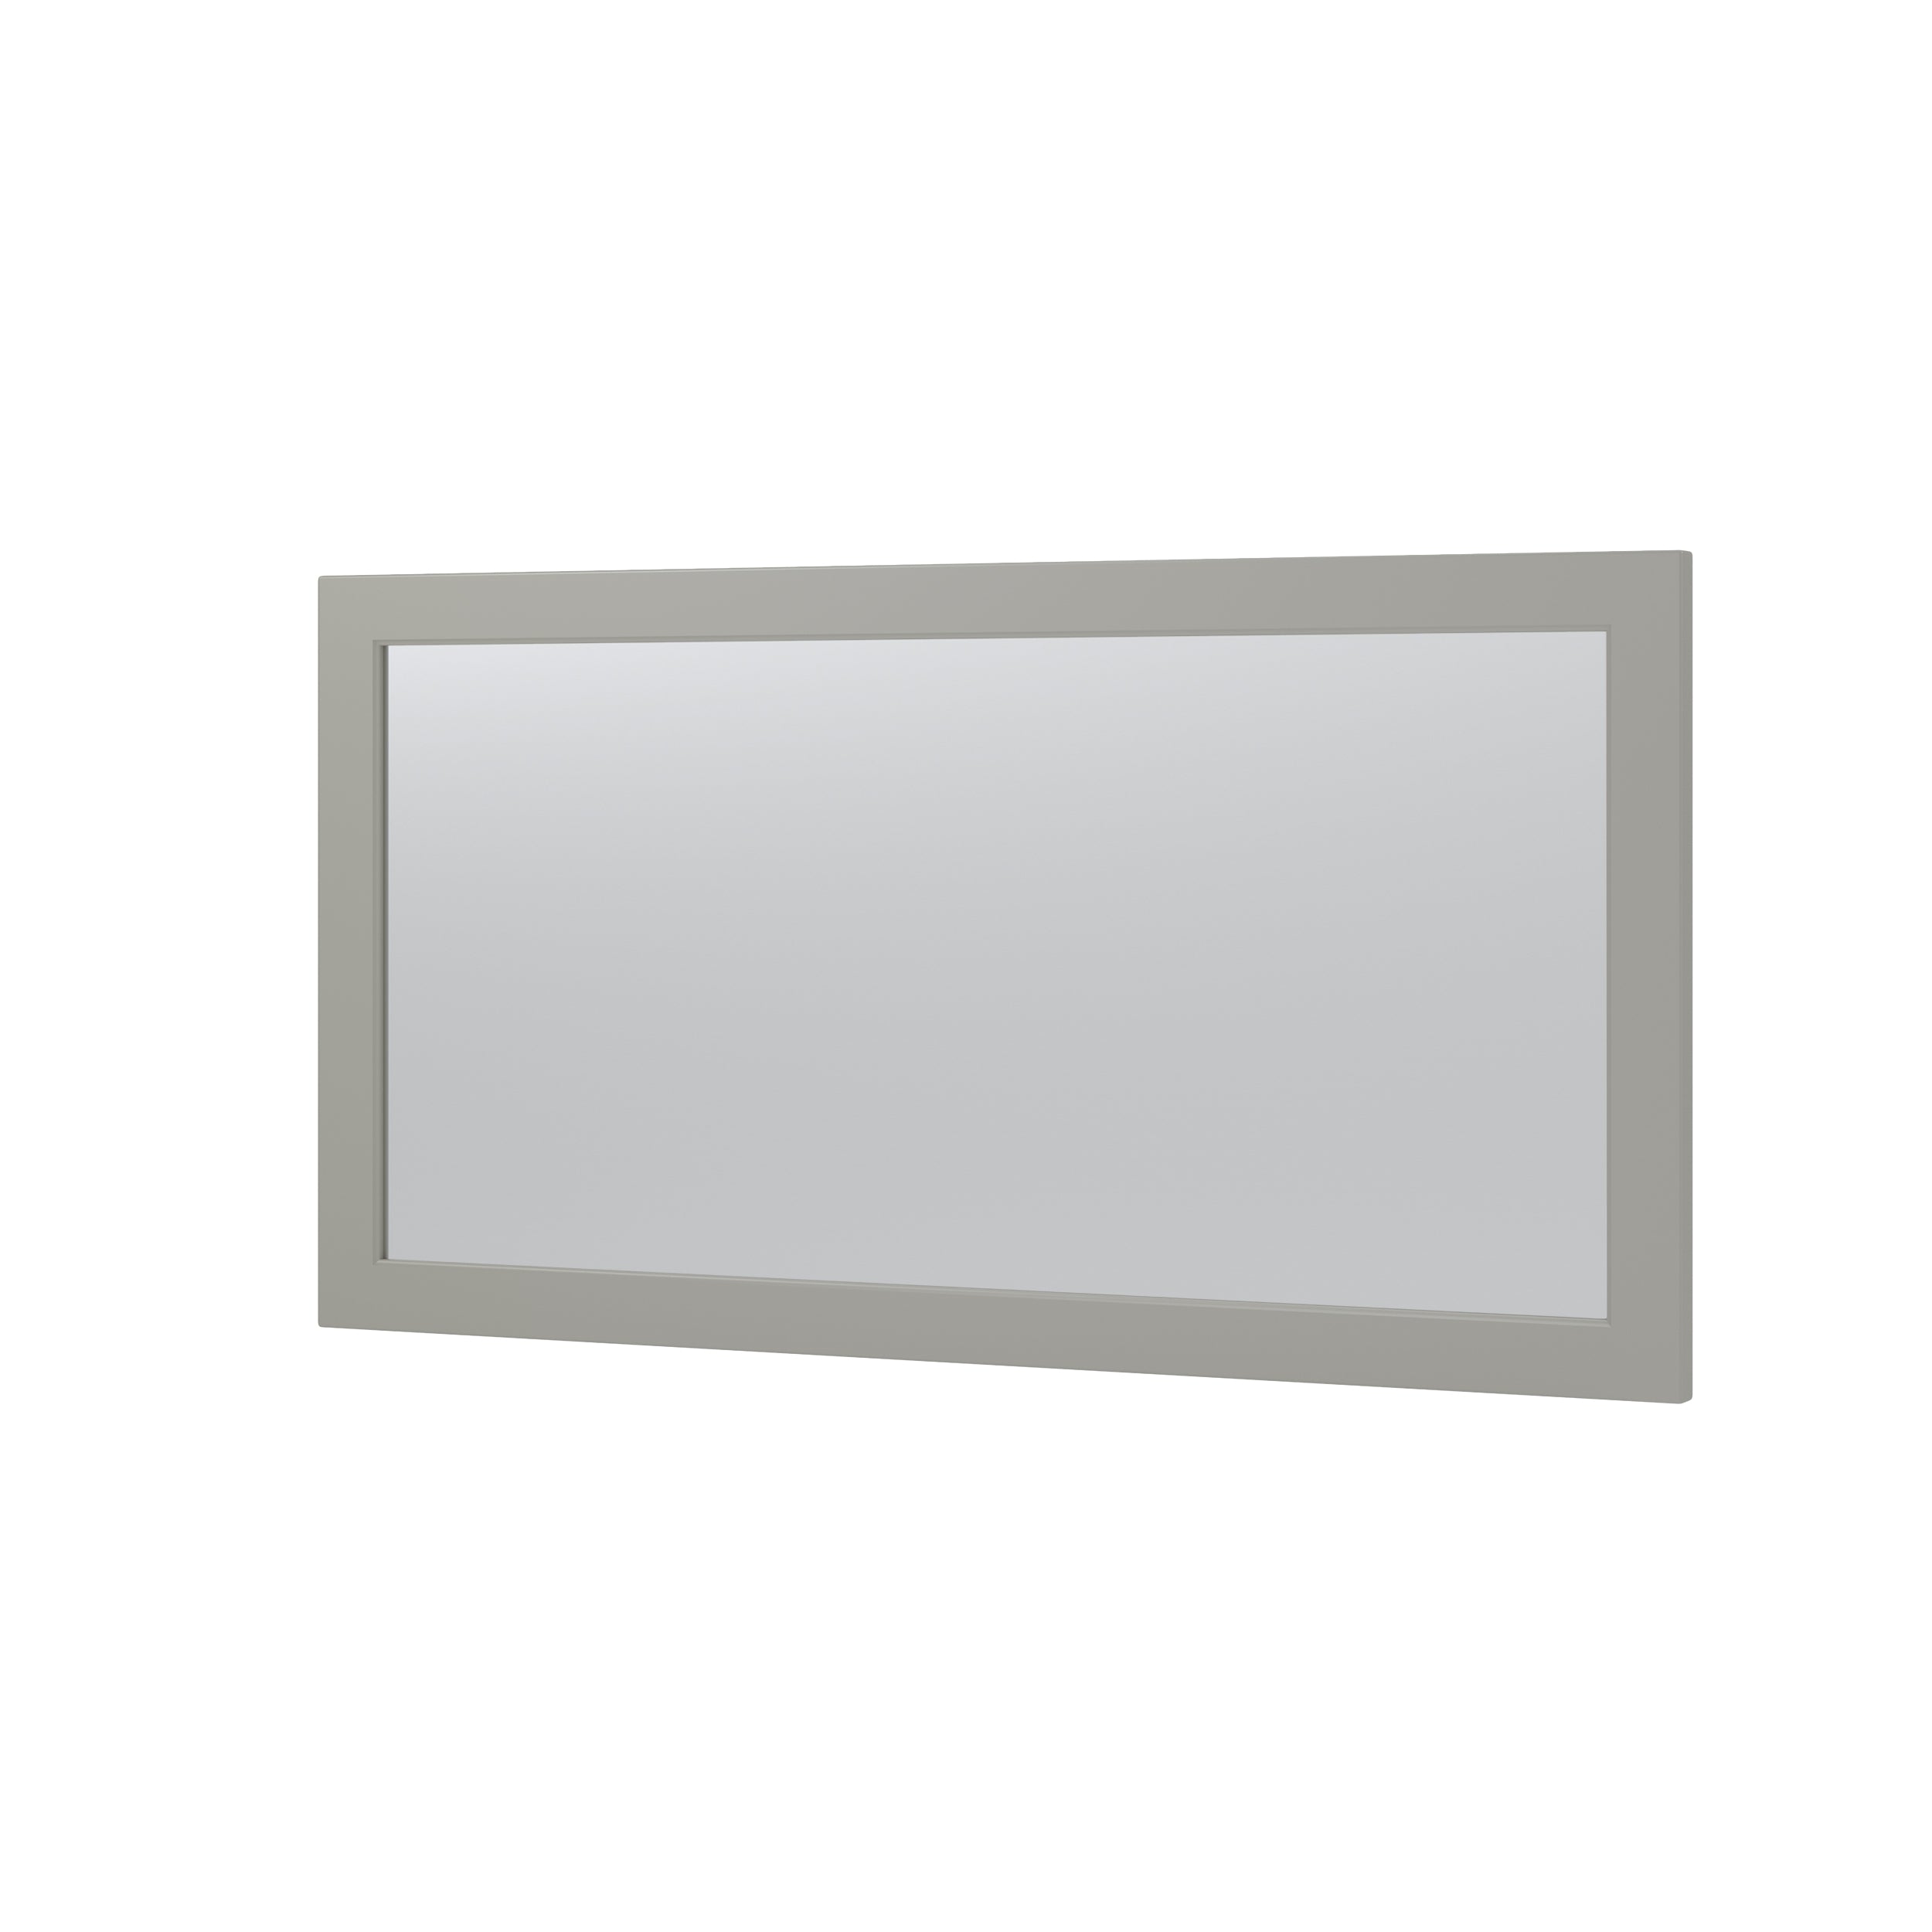 (Rectangular MDF Framed Wall Mounted Bathroom Mirror(CRM05)